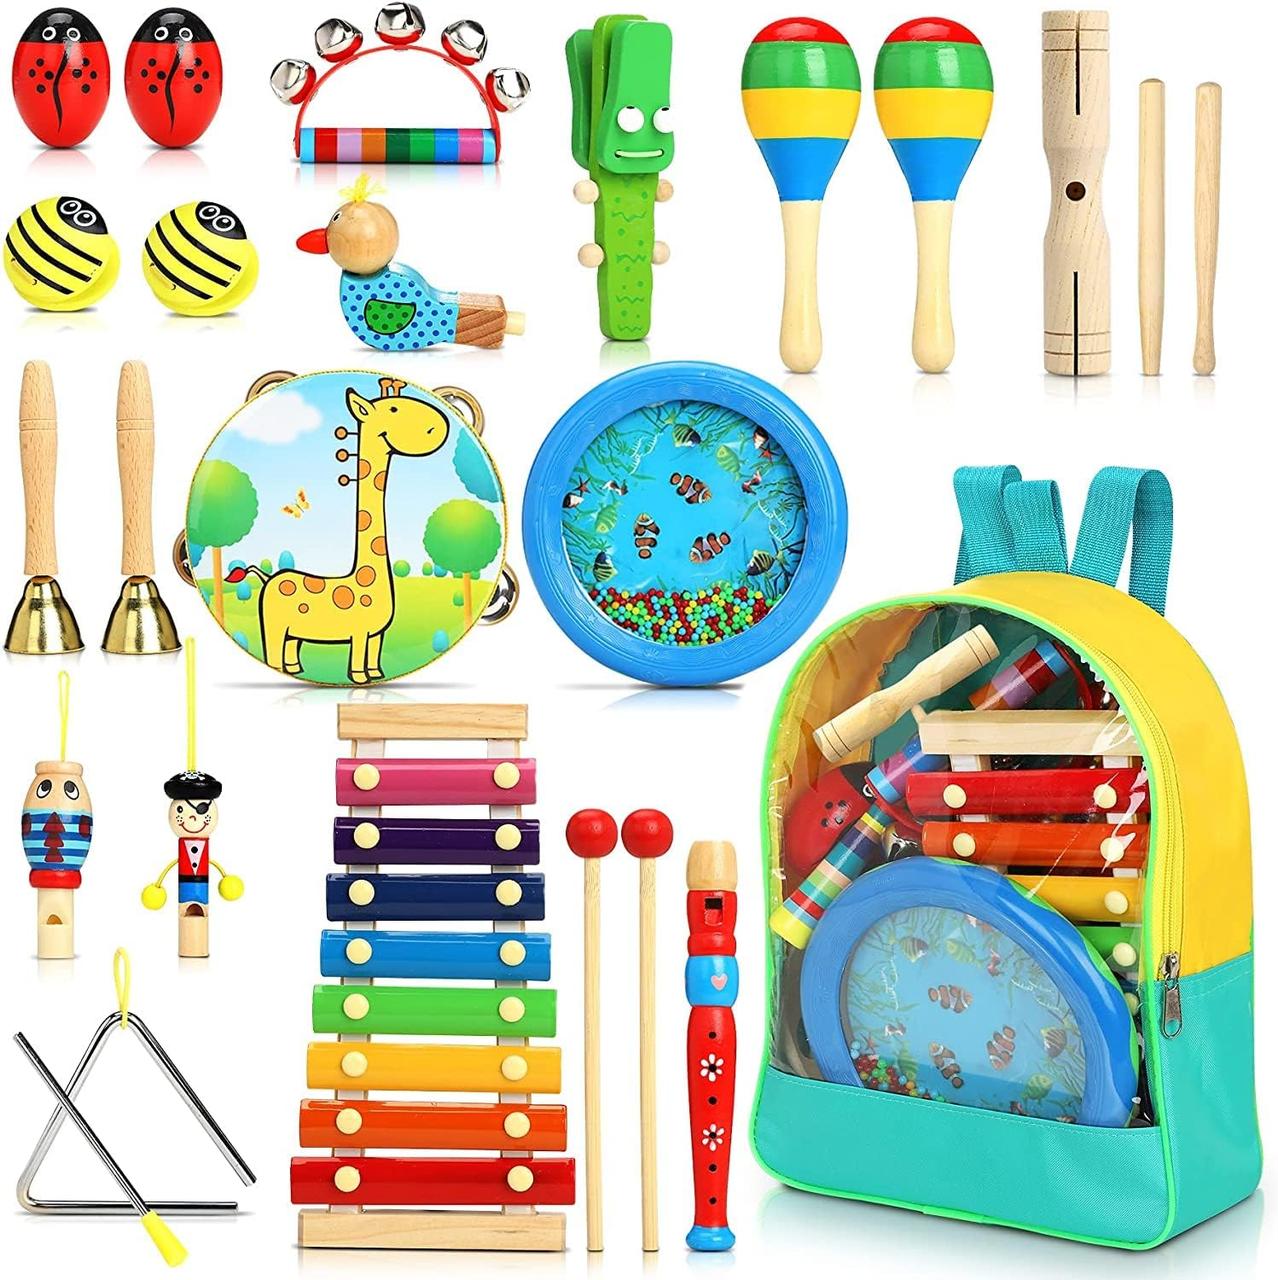 Дитячий набір музичних інструментів Jojoin — 24 предмети, інструменти, ударні дерев'яні іграшки, Amazon,